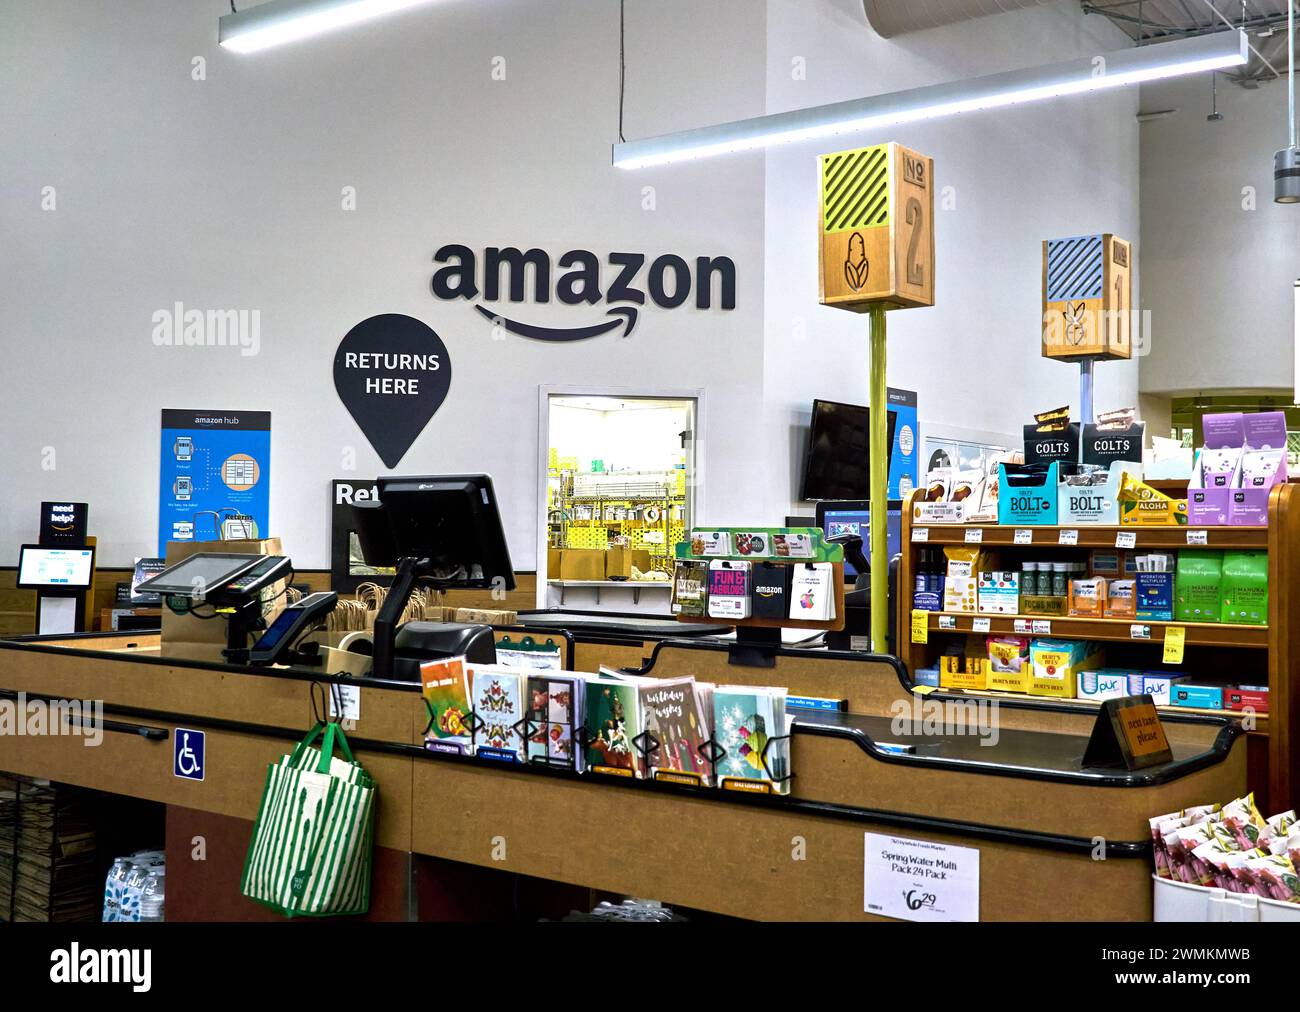 Amazon return at Whole Foods Market Stock Photo